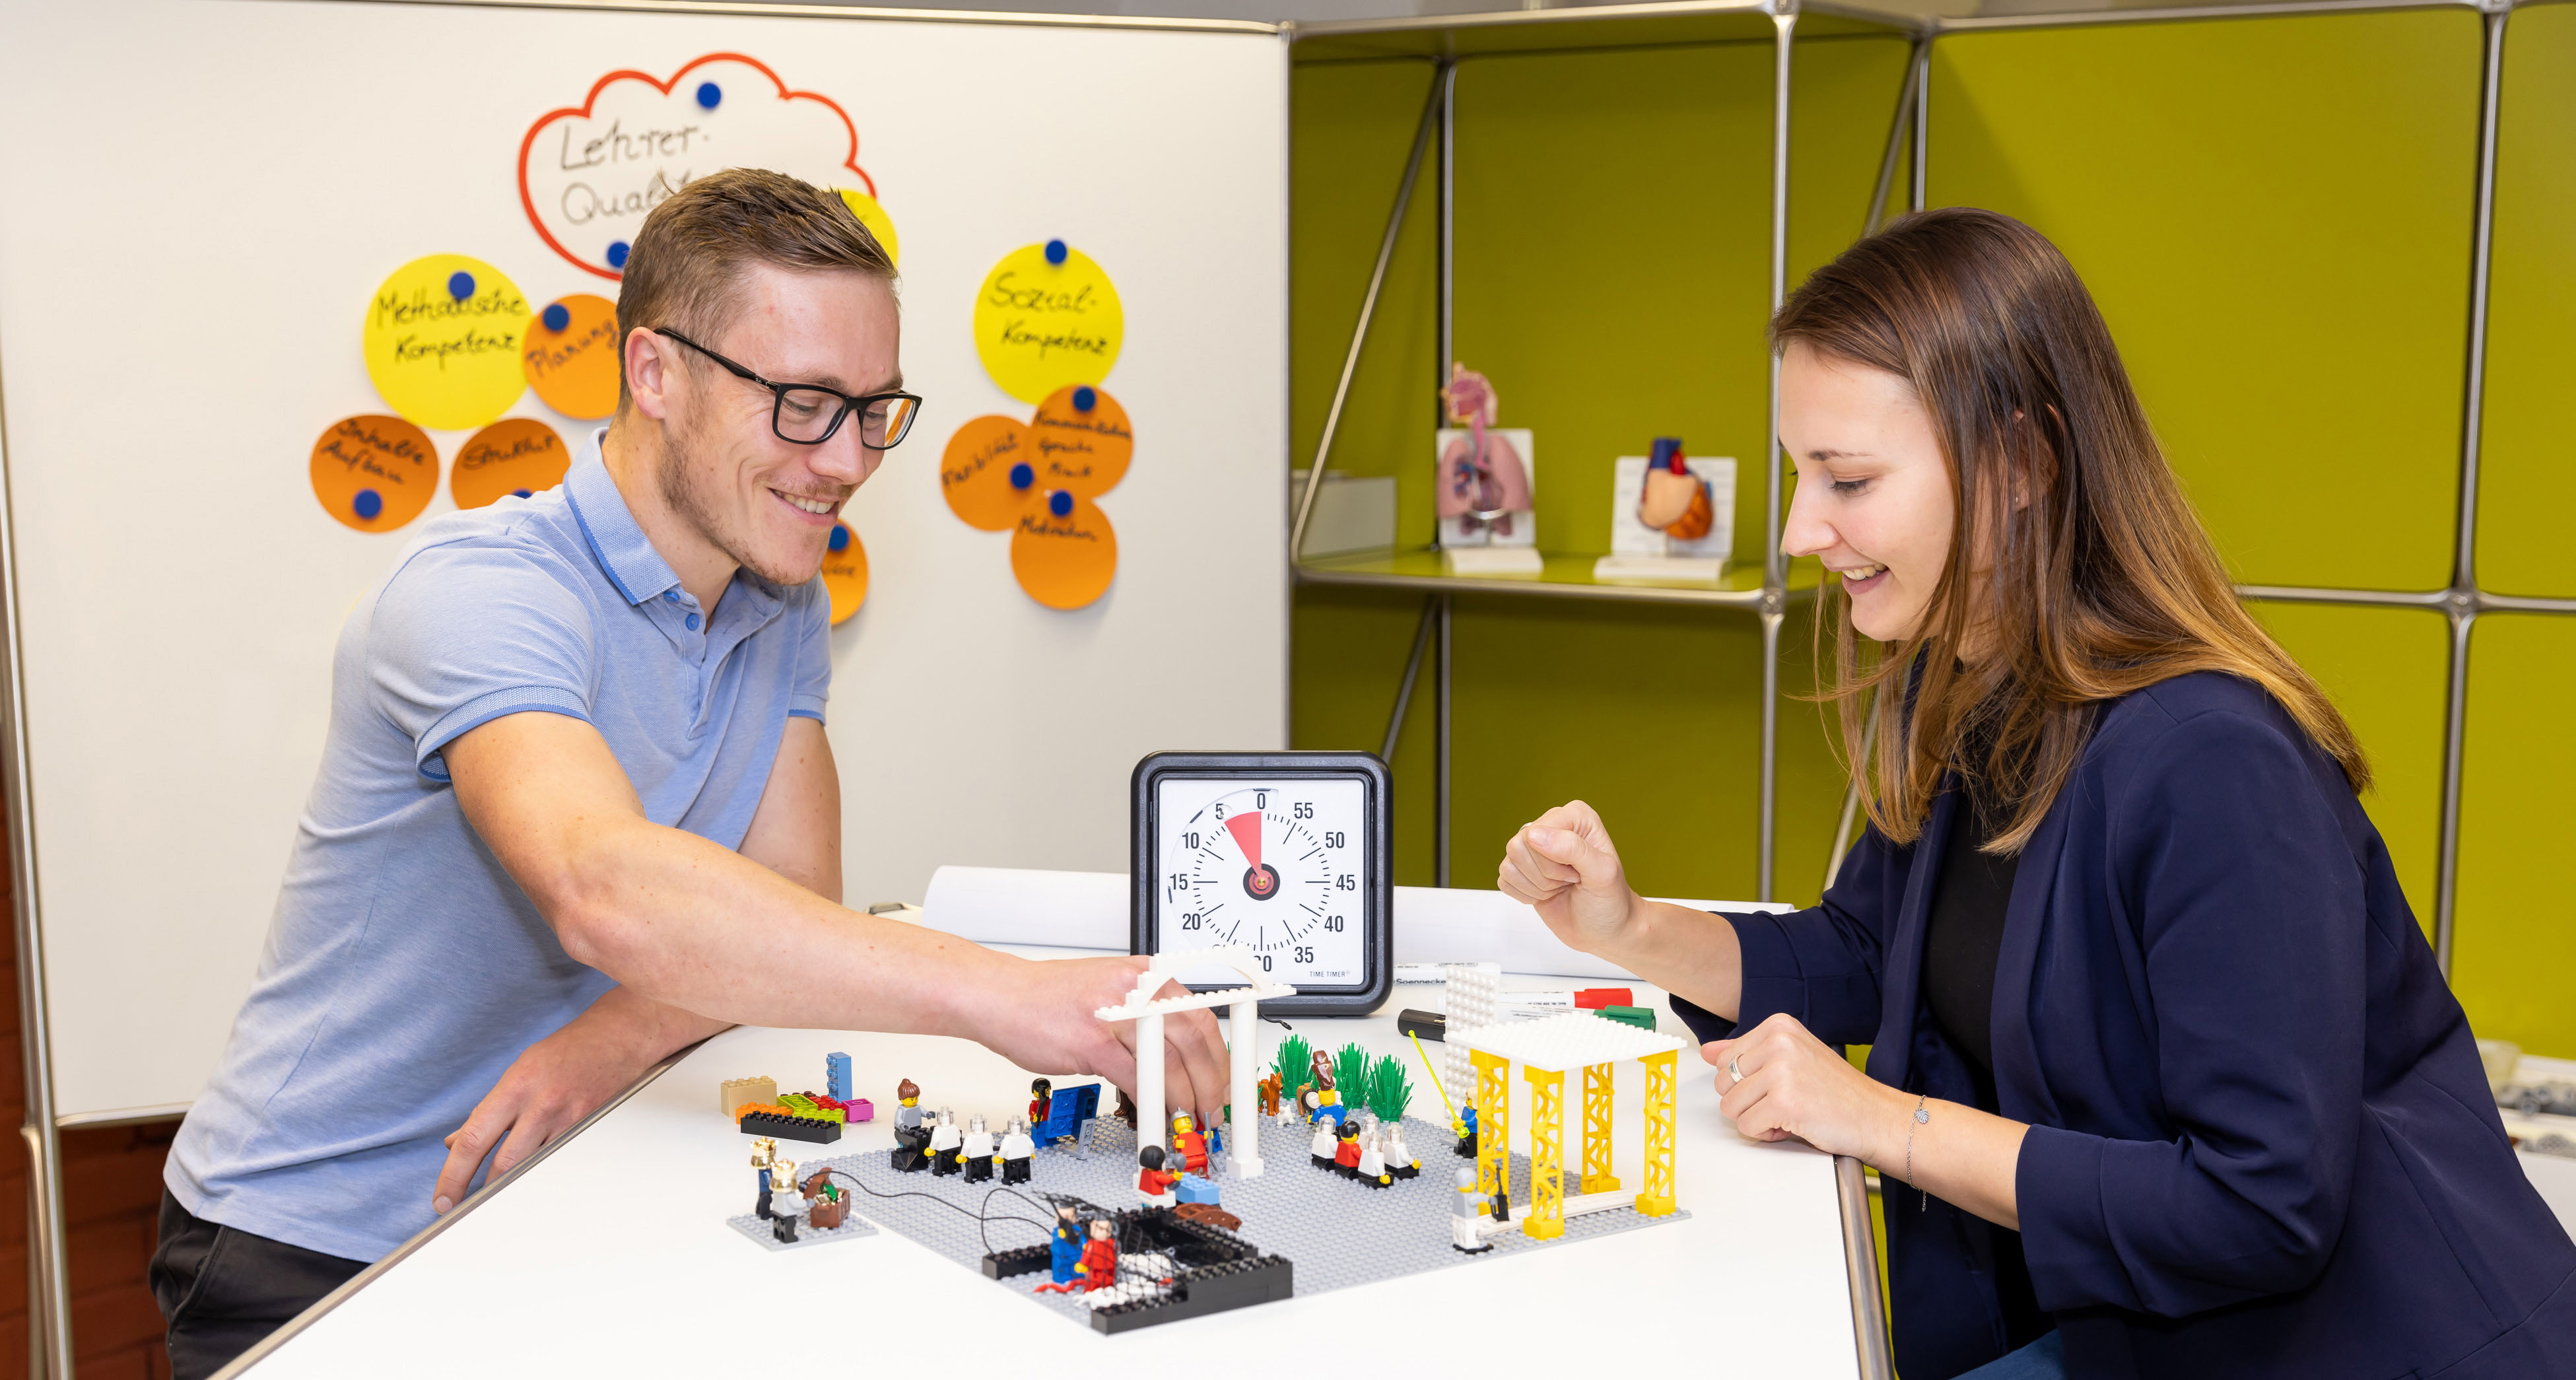 Zwei Studierende sitzen an einem Tisch und stellen Abläufe in einem Krankenhaus mit Lego-Bausteinen dar.